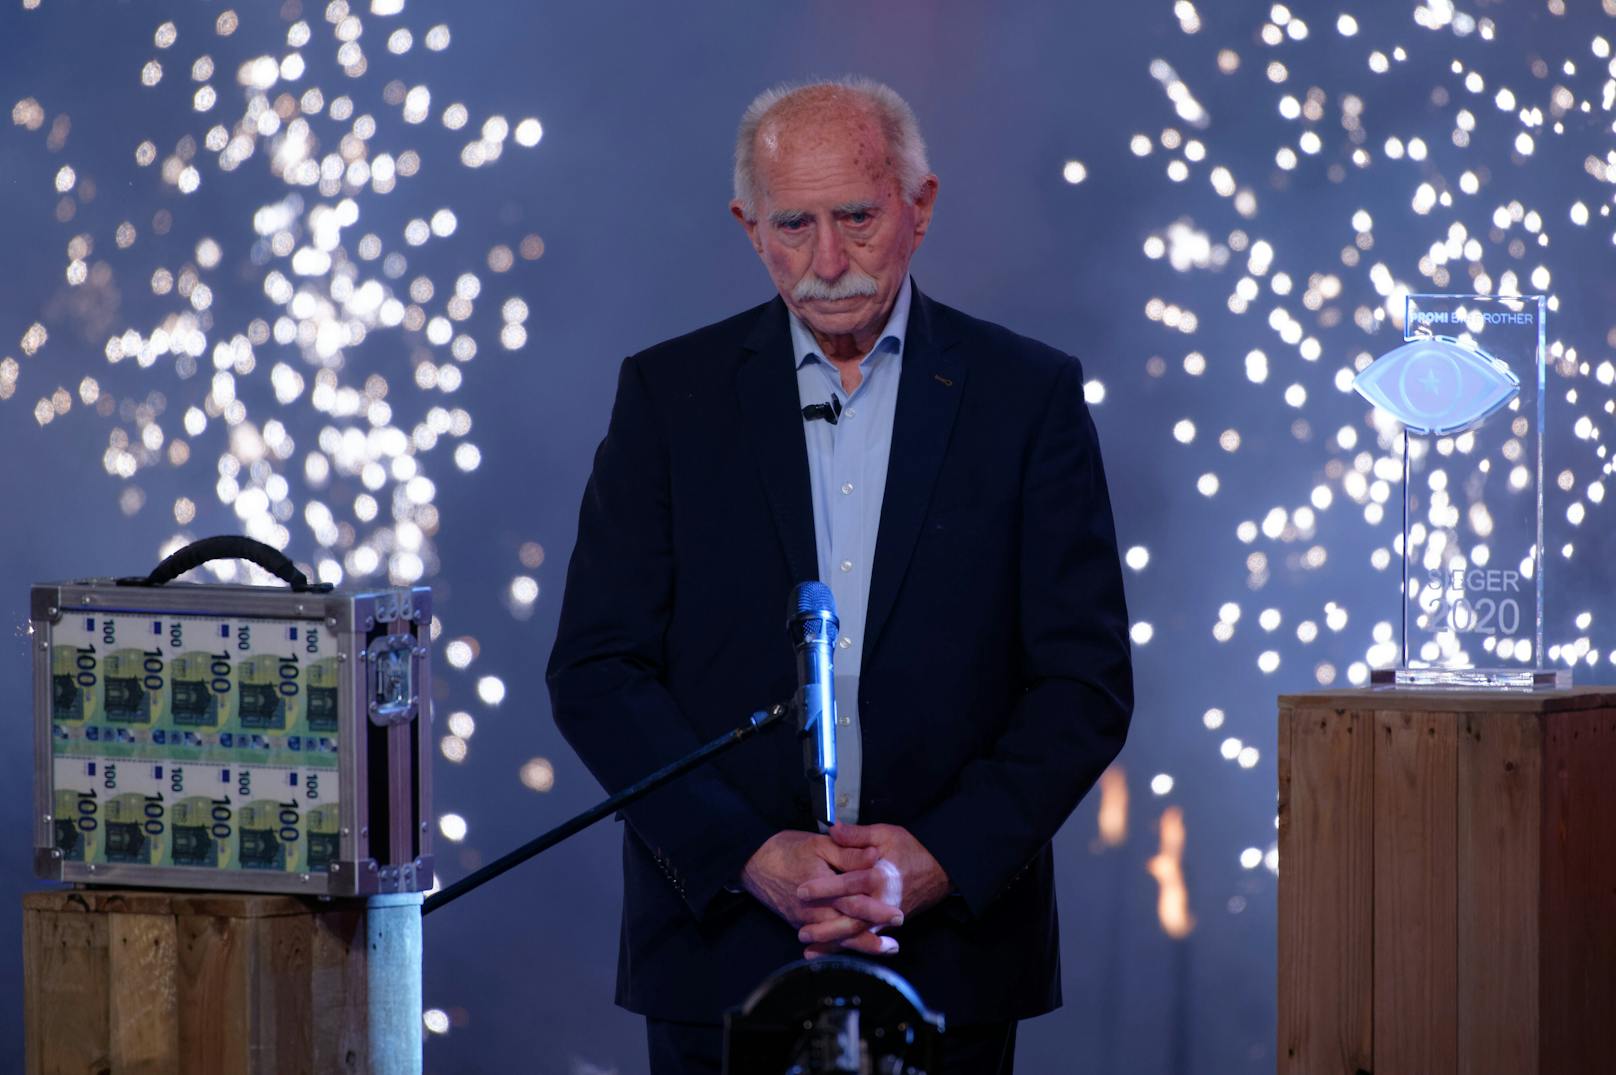 "Du bist der älteste Gewinner einer Realityshow weltweit", gratulierte Moderator Jochen Schropp dem sichtlich gerührten Hansch